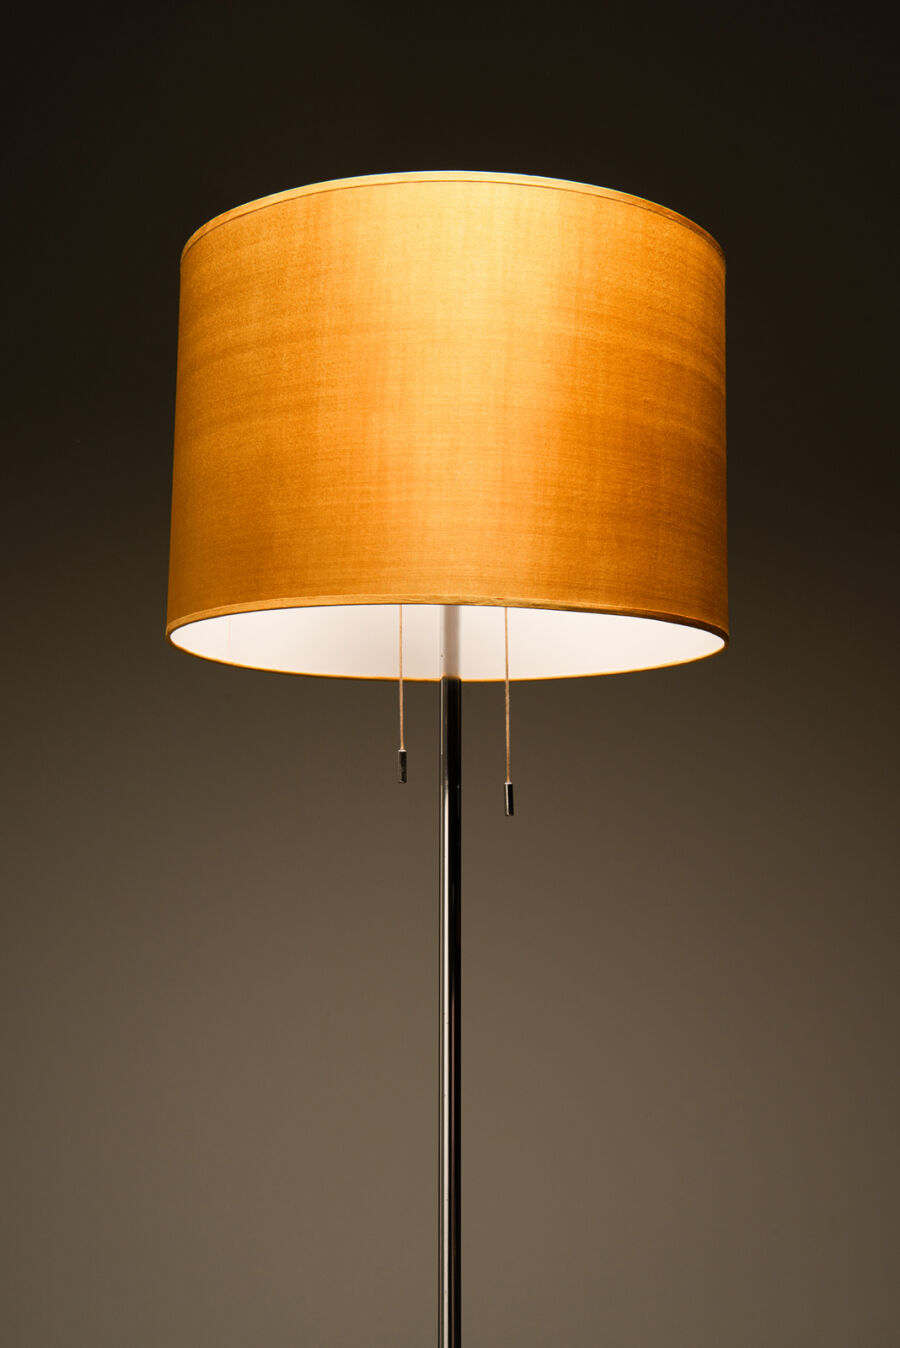 lamp3-2